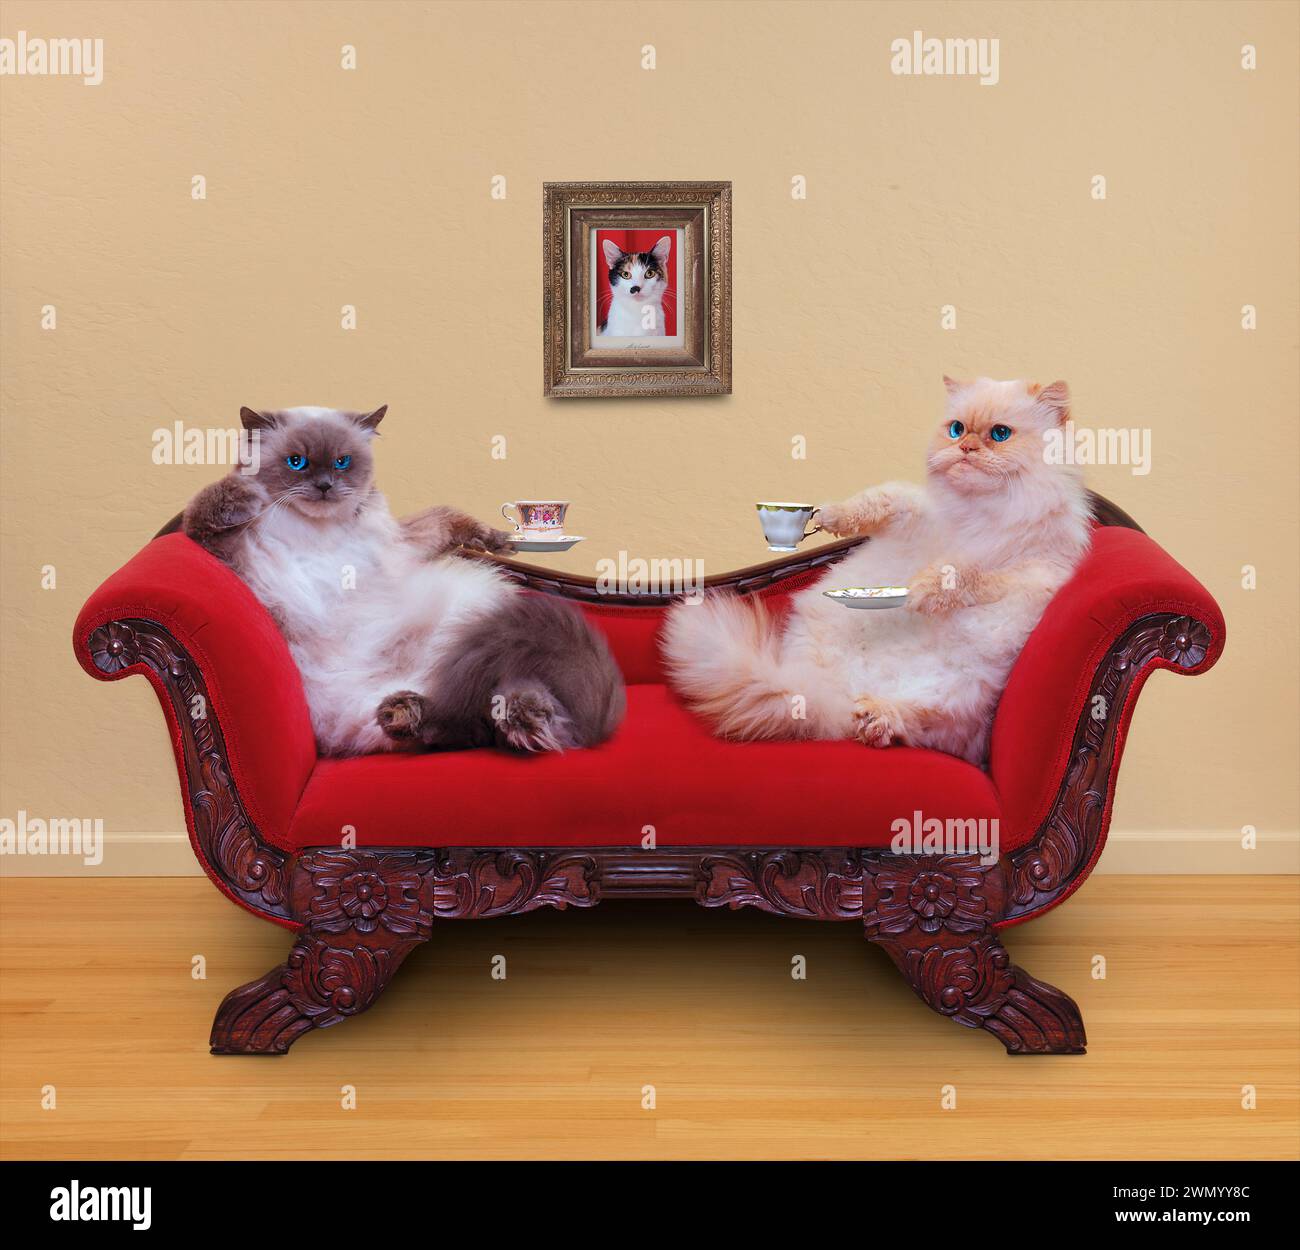 Deux chats apprécient le tome de thé sur un canapé rouge dans une image drôle d'animal de compagnie. Banque D'Images